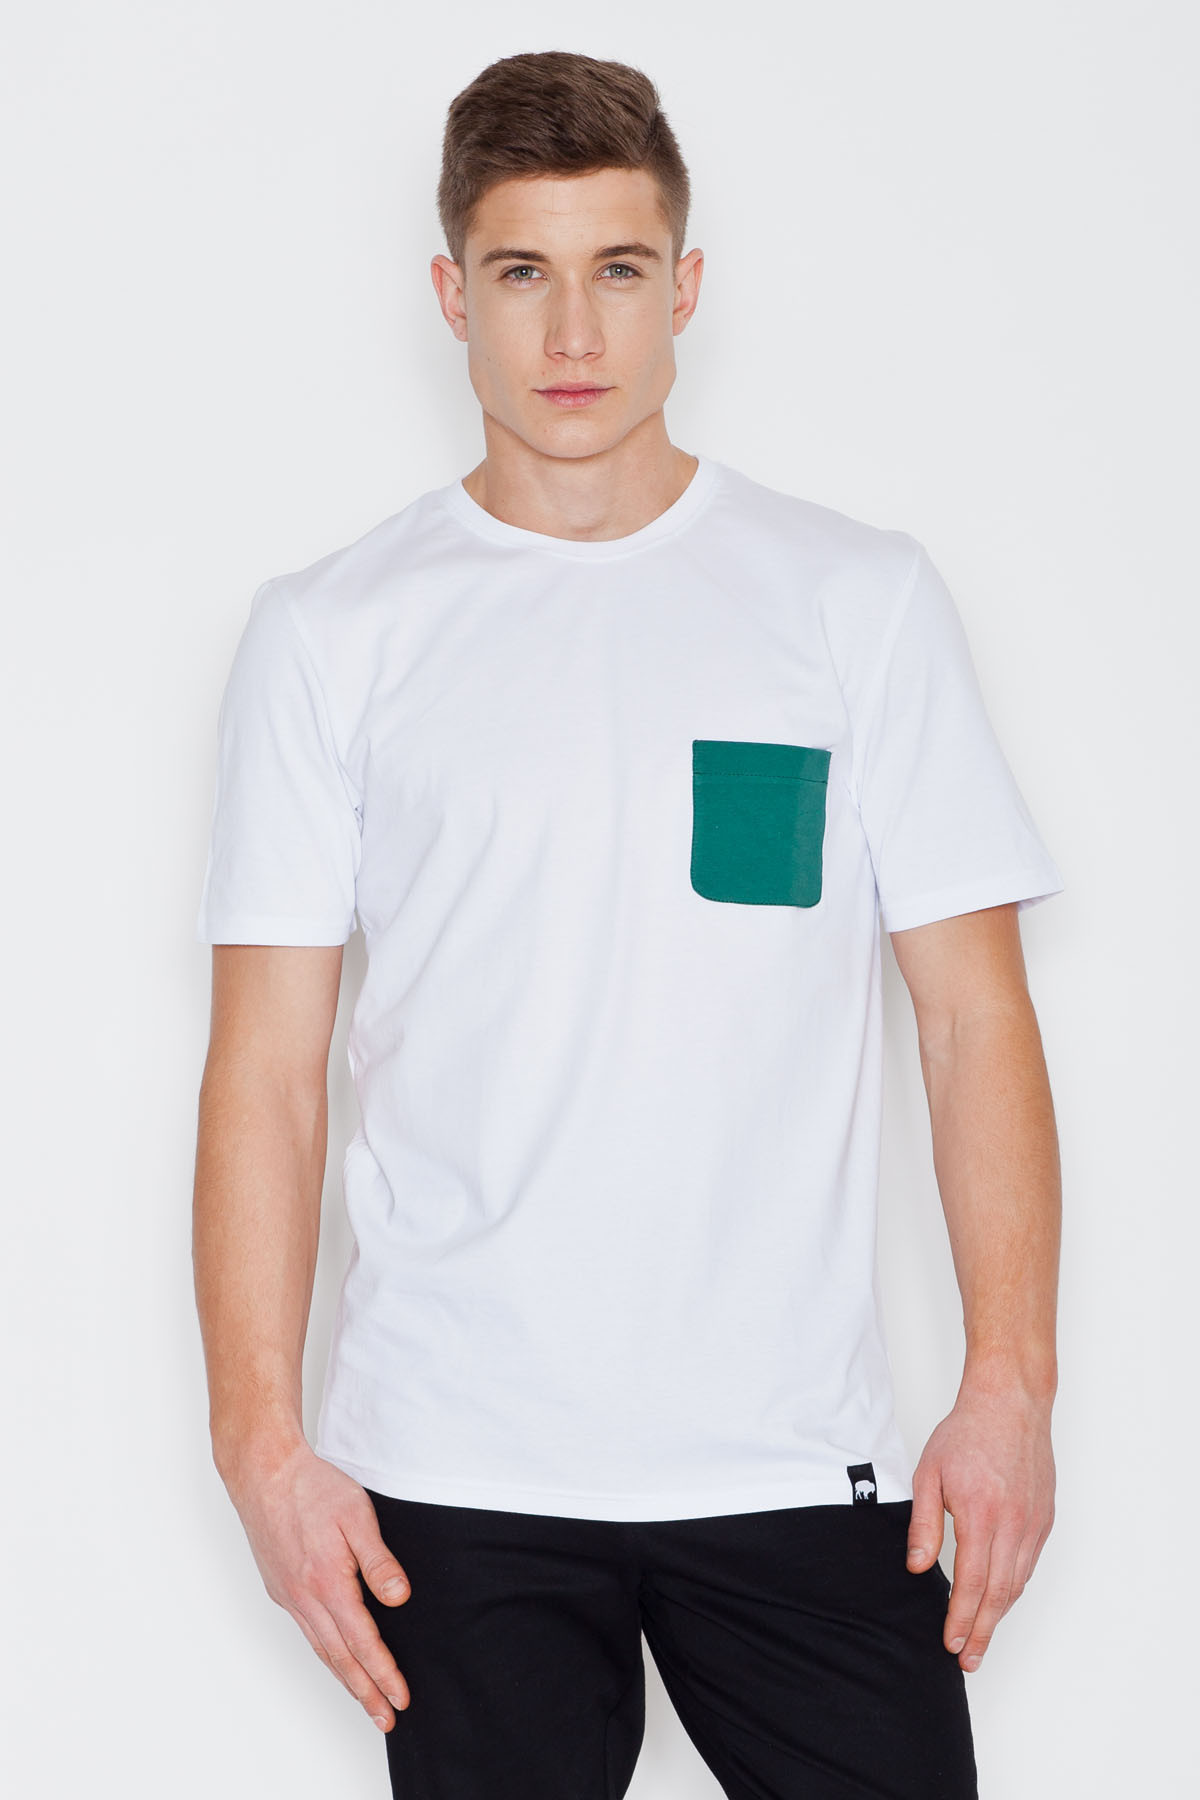 Pánské tričko - V002 - Visent - White M